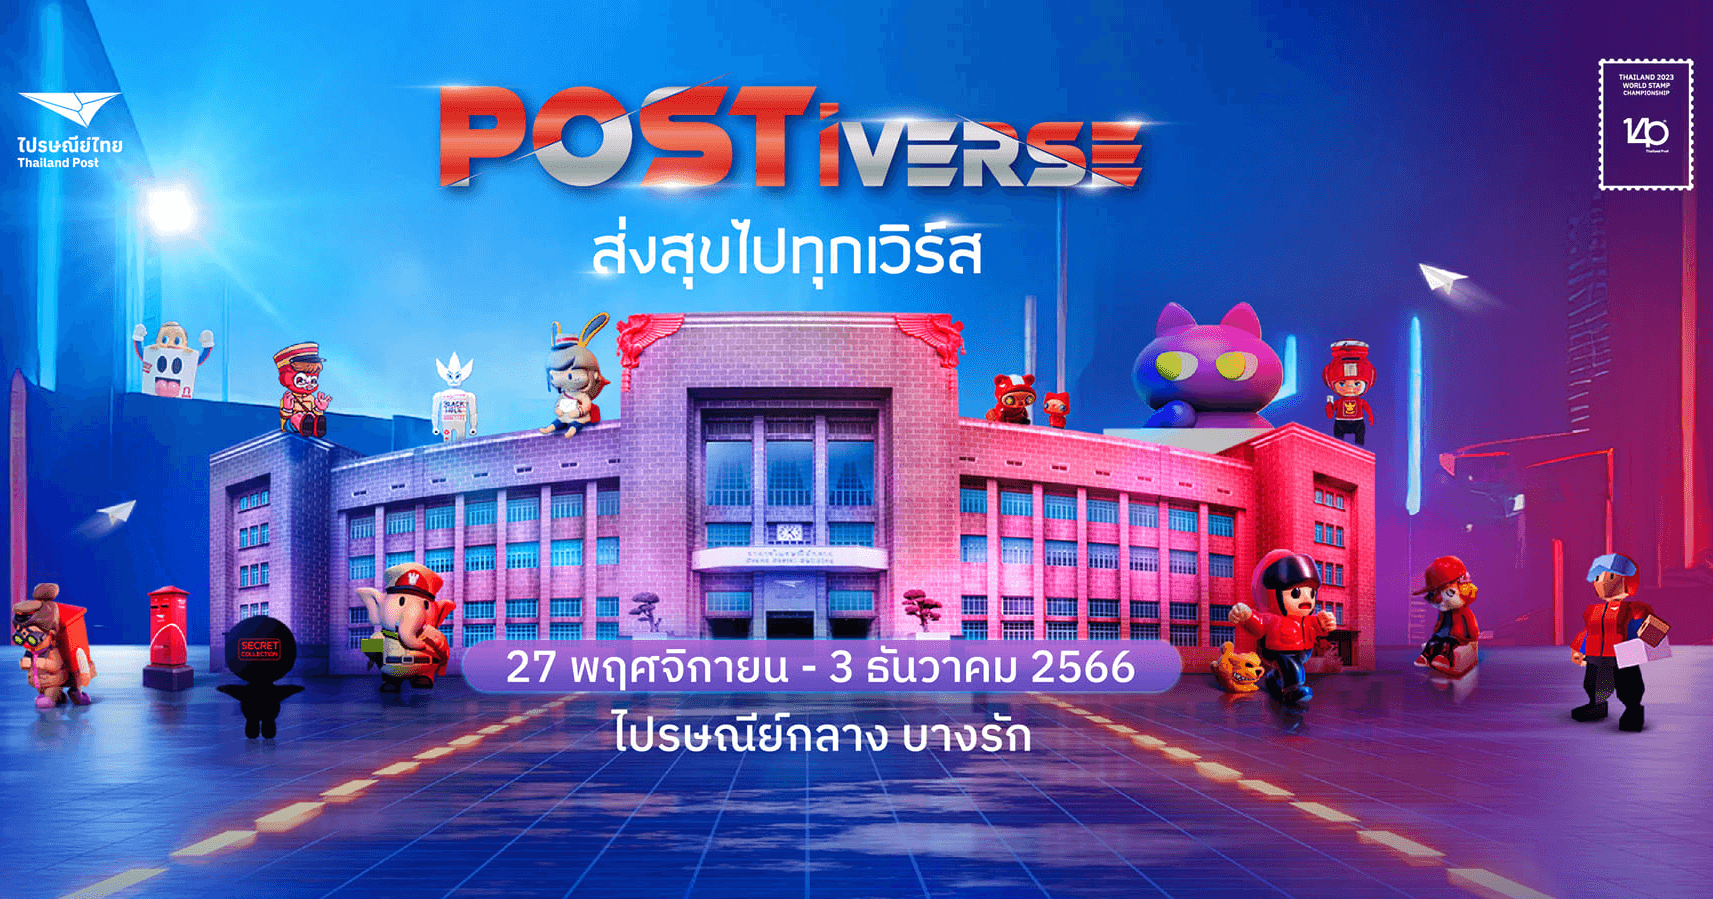 ไปรษณีย์ไทย แปลงโฉมไปรษณีย์กลางบางรักจัดงาน POSTiverse 27 พ.ย. – 3 ธ.ค. 66